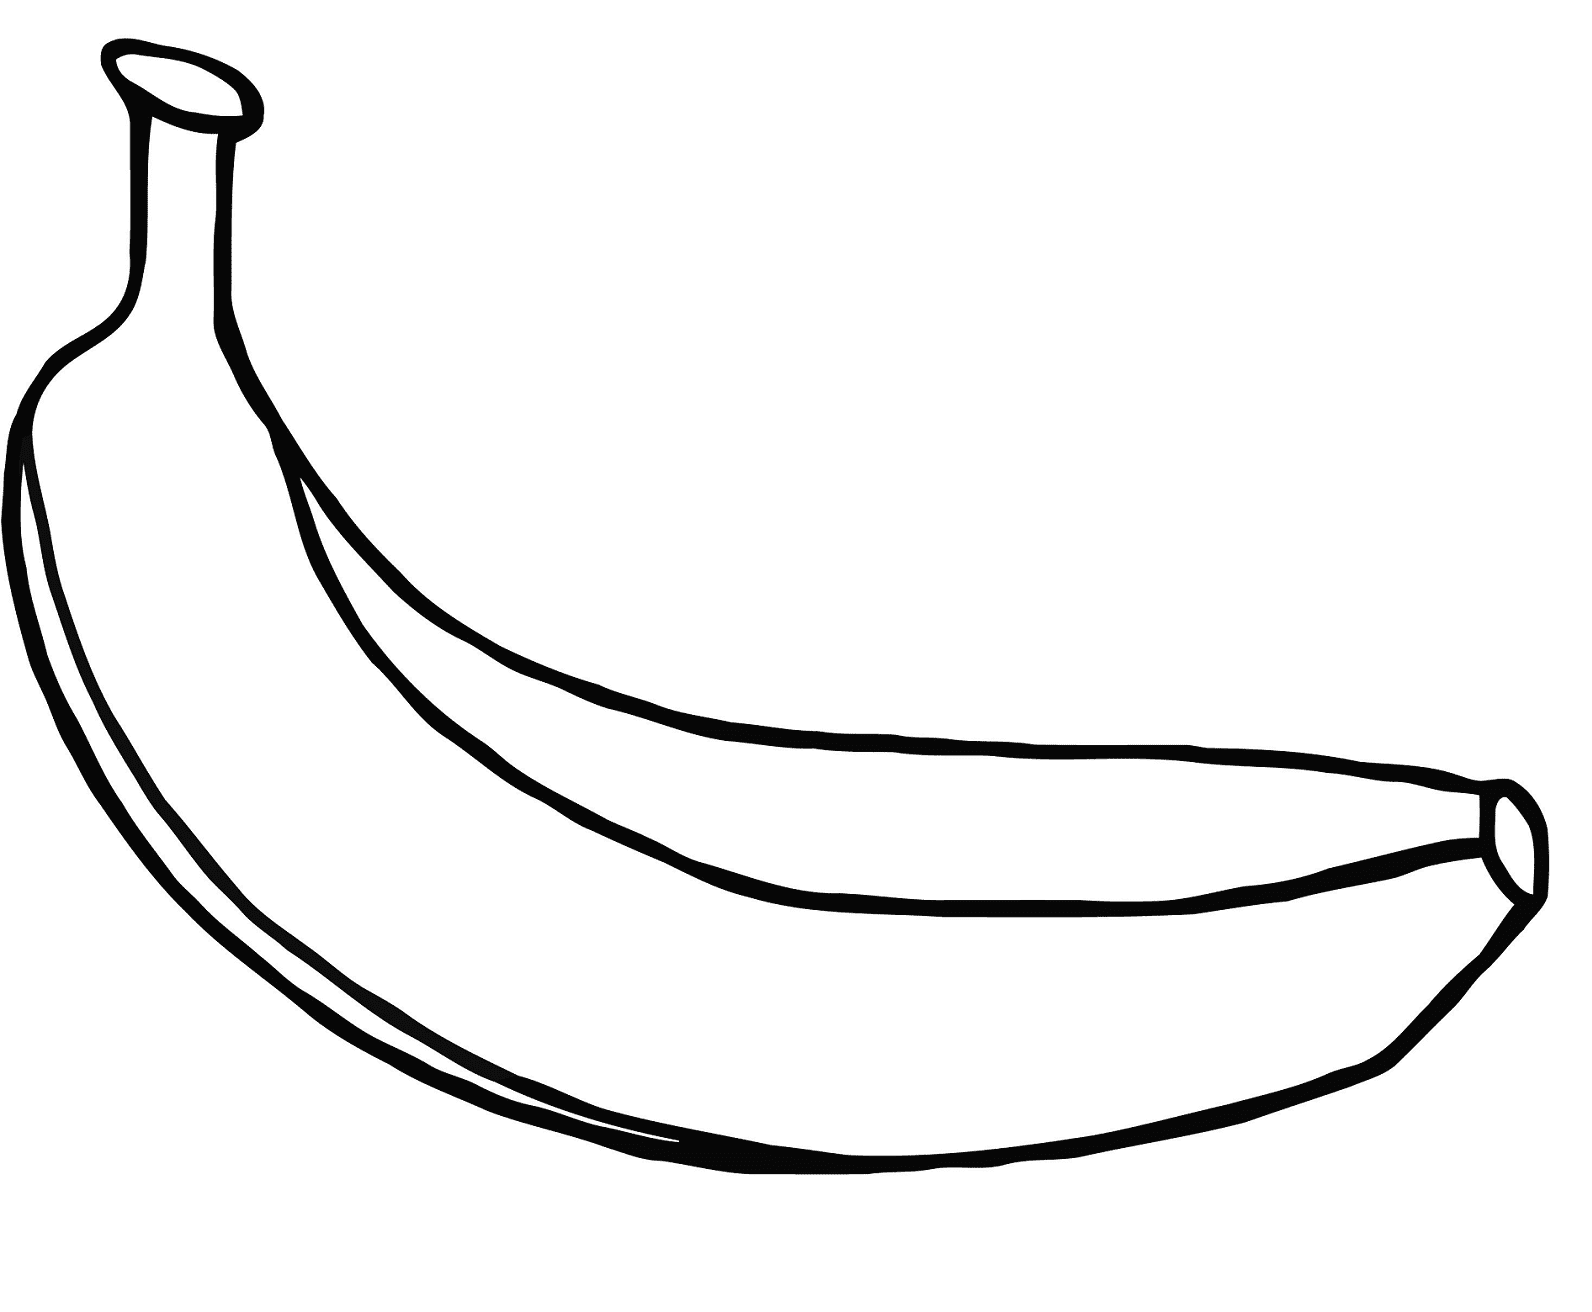 Un plátano de plátanos